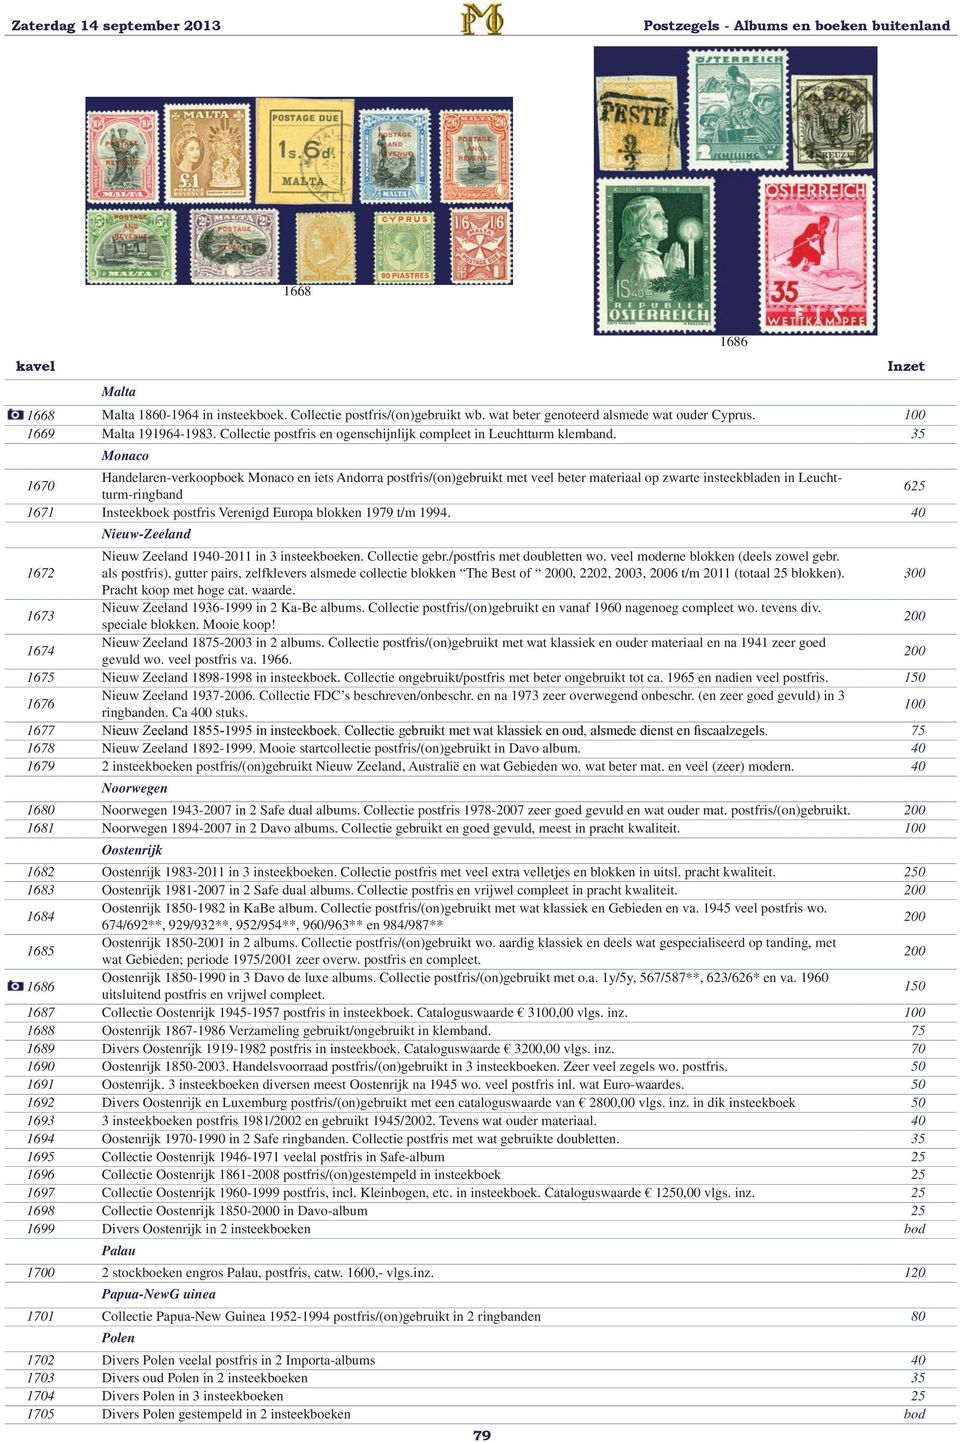 35 Monaco 1670 Handelaren-verkoopboek Monaco en iets Andorra postfris/(on)gebruikt met veel beter materiaal op zwarte insteekbladen in Leuchtturm-ringband 625 1671 Insteekboek postfris Verenigd